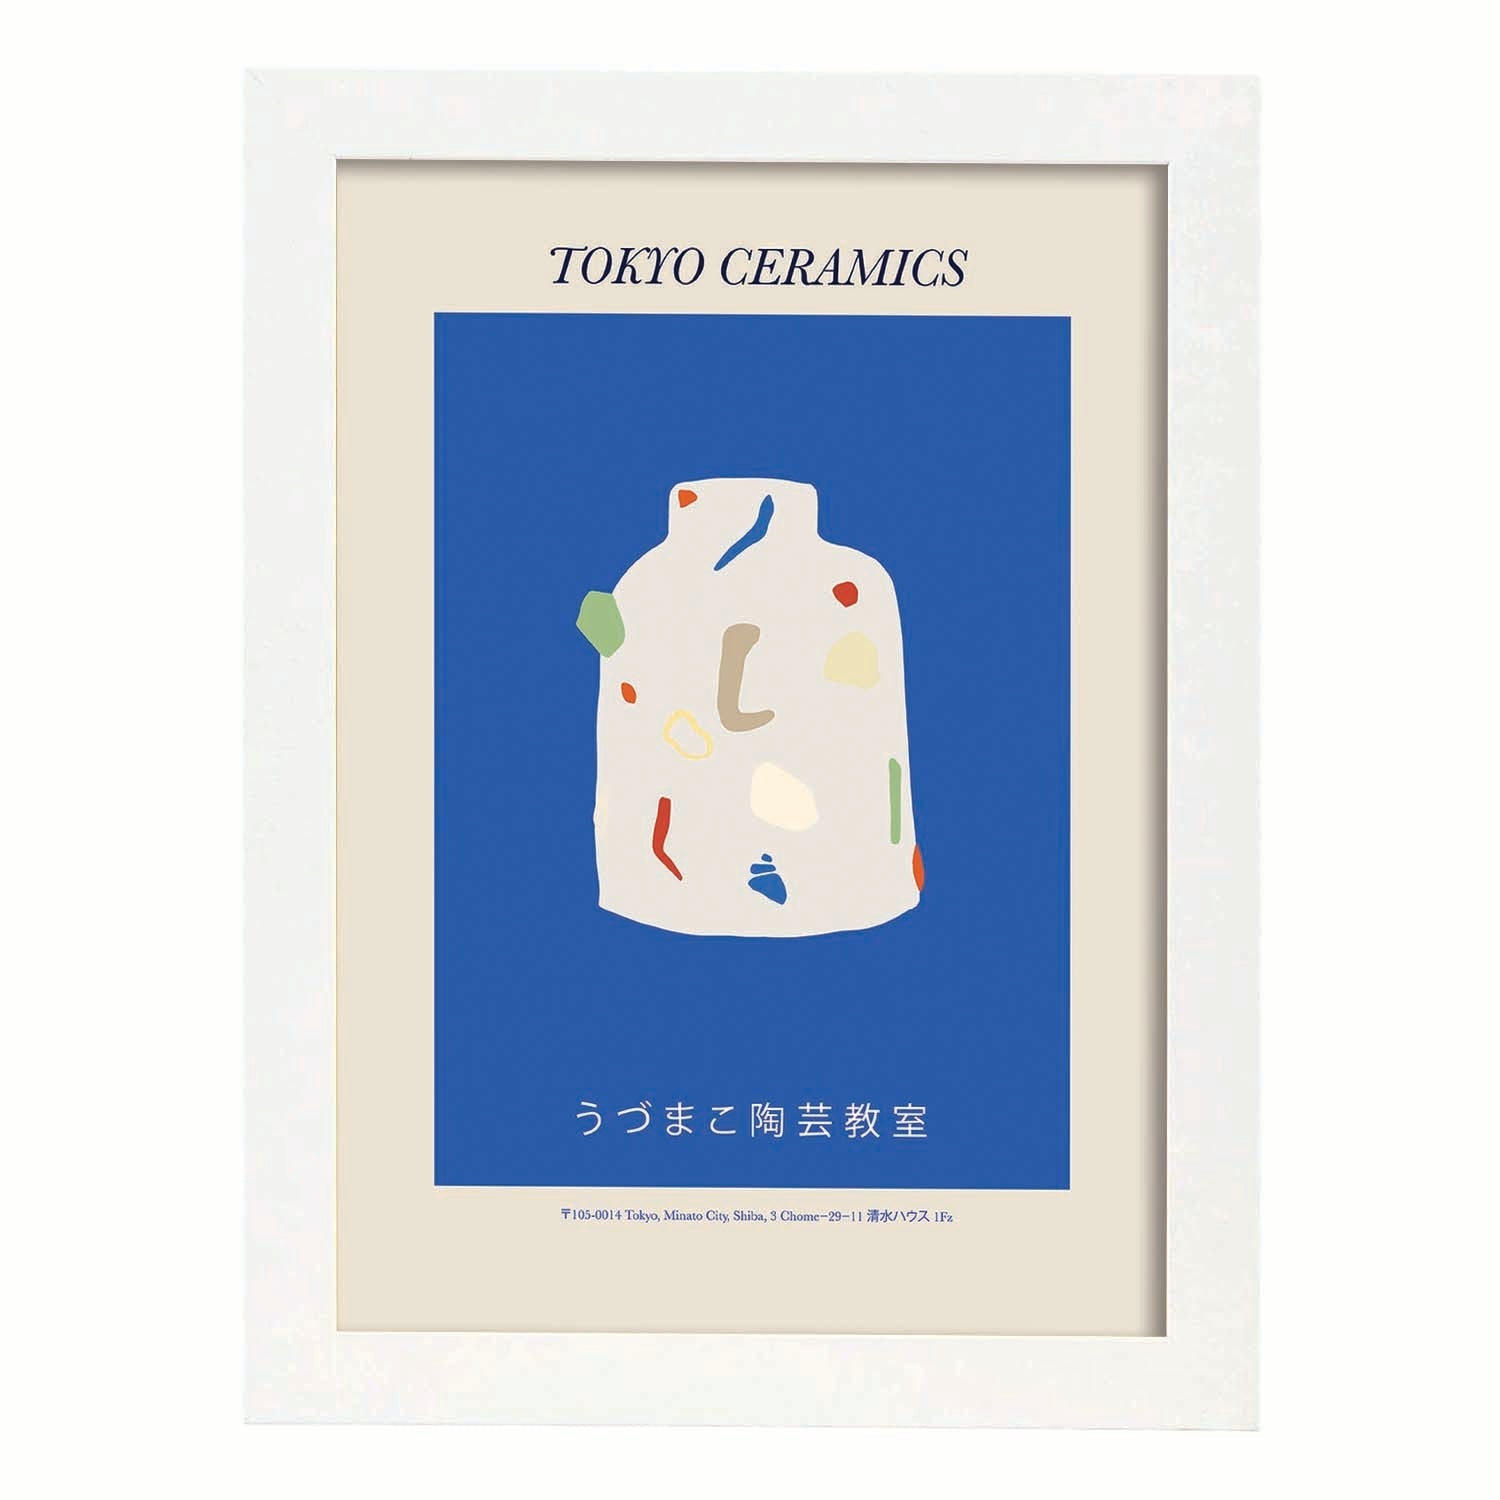 Lamina artistica decorativa con ilustración de Tokio Ceramics-Artwork-Nacnic-A4-Marco Blanco-Nacnic Estudio SL